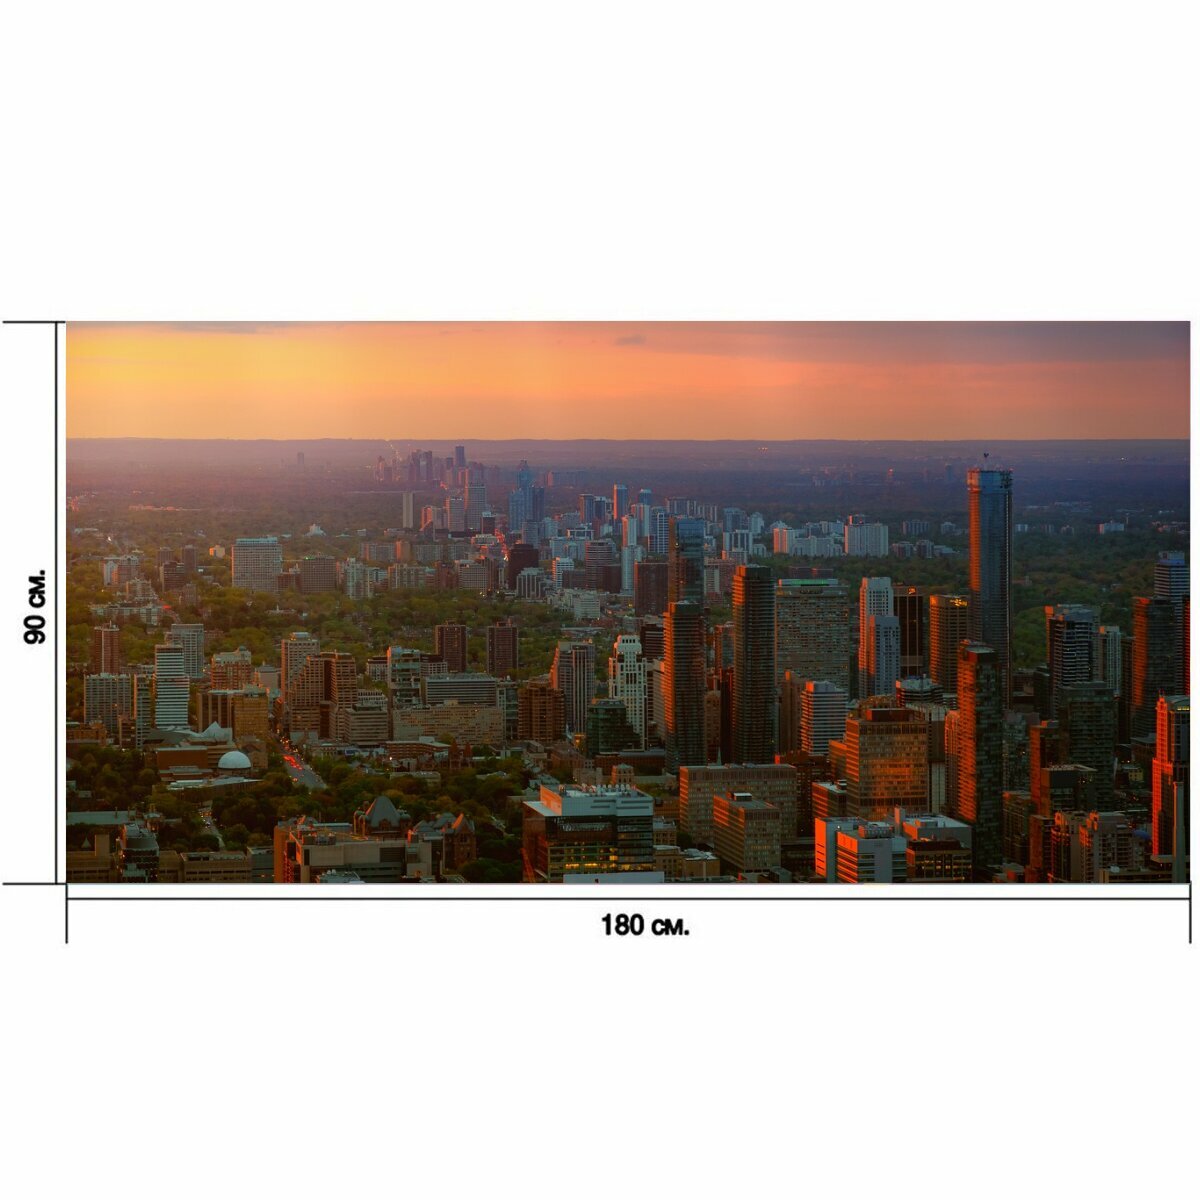 Большой постер "Город, панорама, городской ландшафт" 180 x 90 см. для интерьера